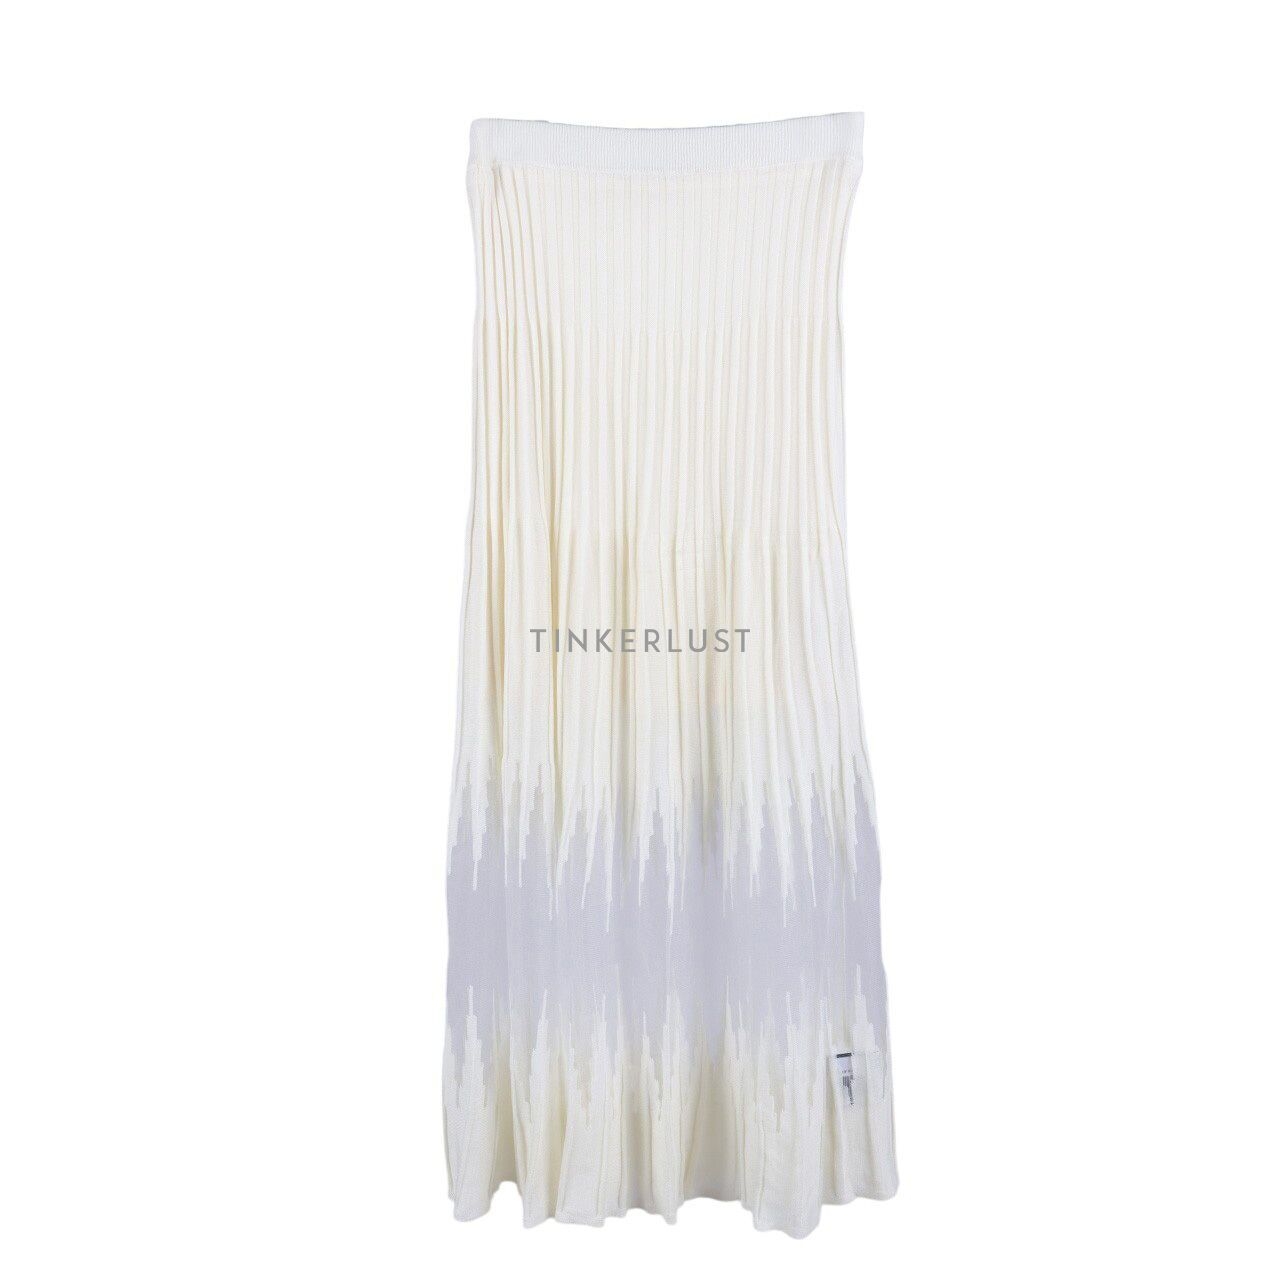 Zara Broken White Sheer Knit Skirt Maxi